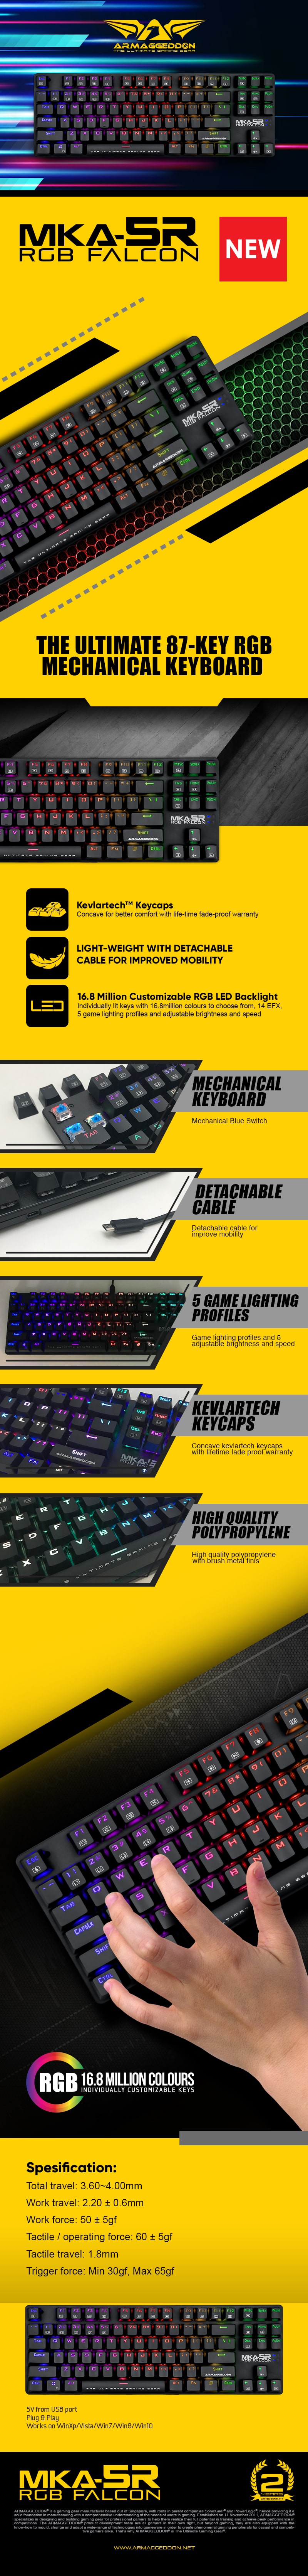 Keyboards-Armaggeddon-MKA-5R-RGB-Falcon-Mechanical-RGB-Gaming-Keyboard-2